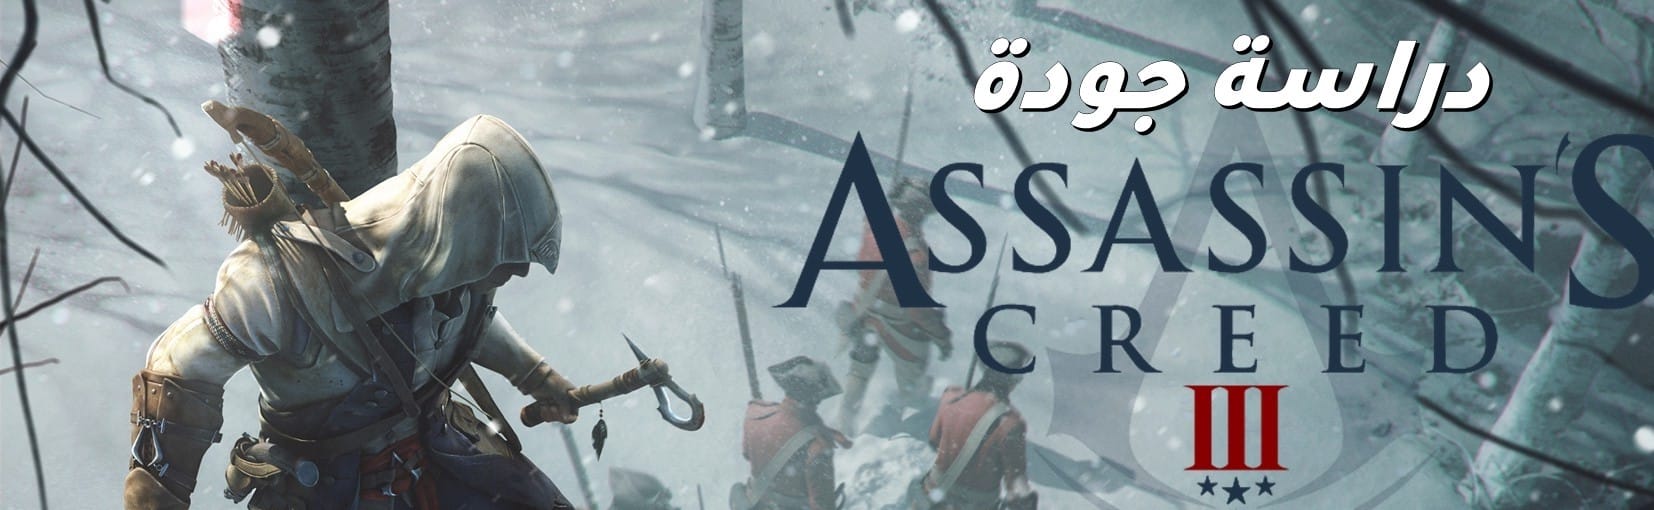 دراسة جودة: Assassin's Creed 3